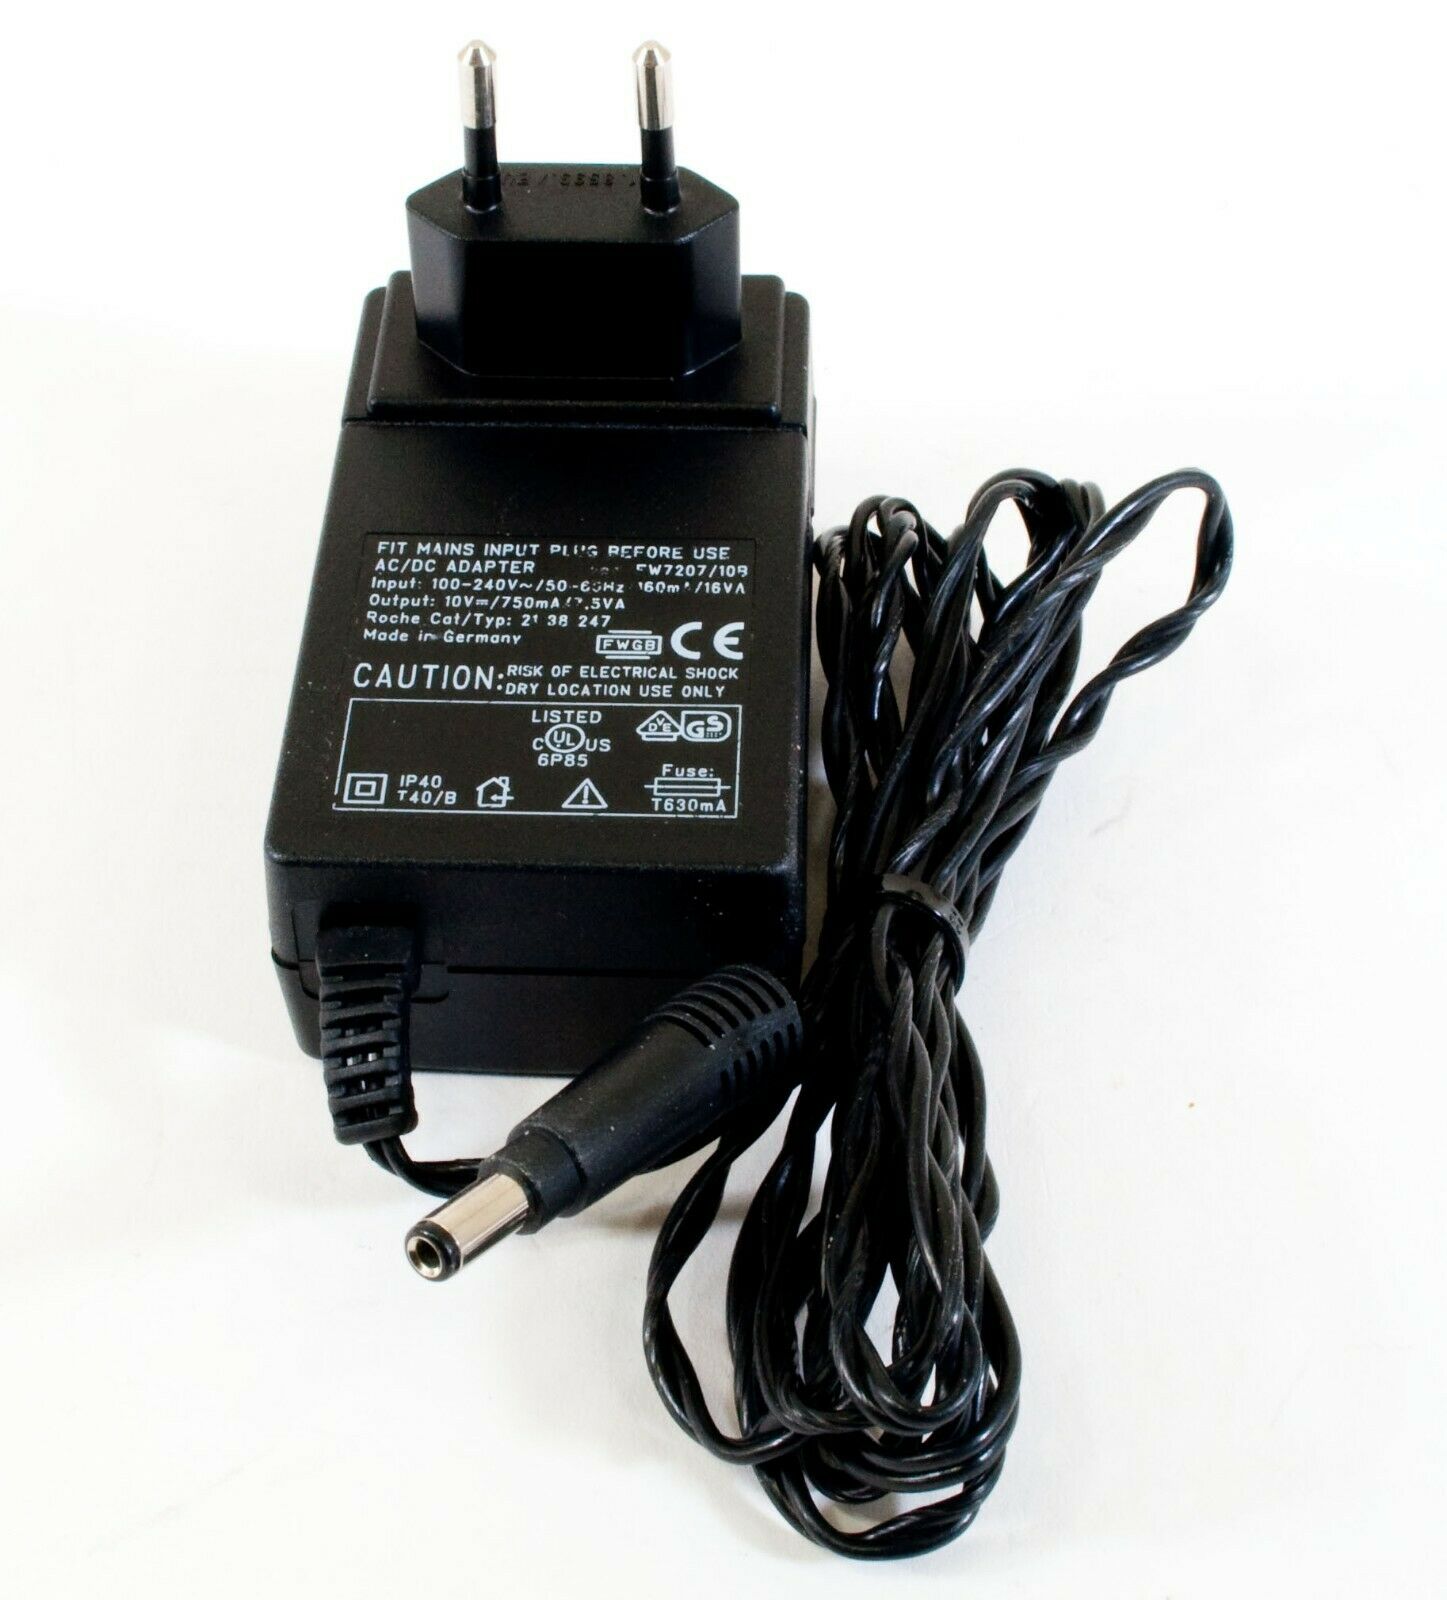 Roche FW7207/10B AC Adapter 10V 750mA Original Power Supply Europlug cosmetic w